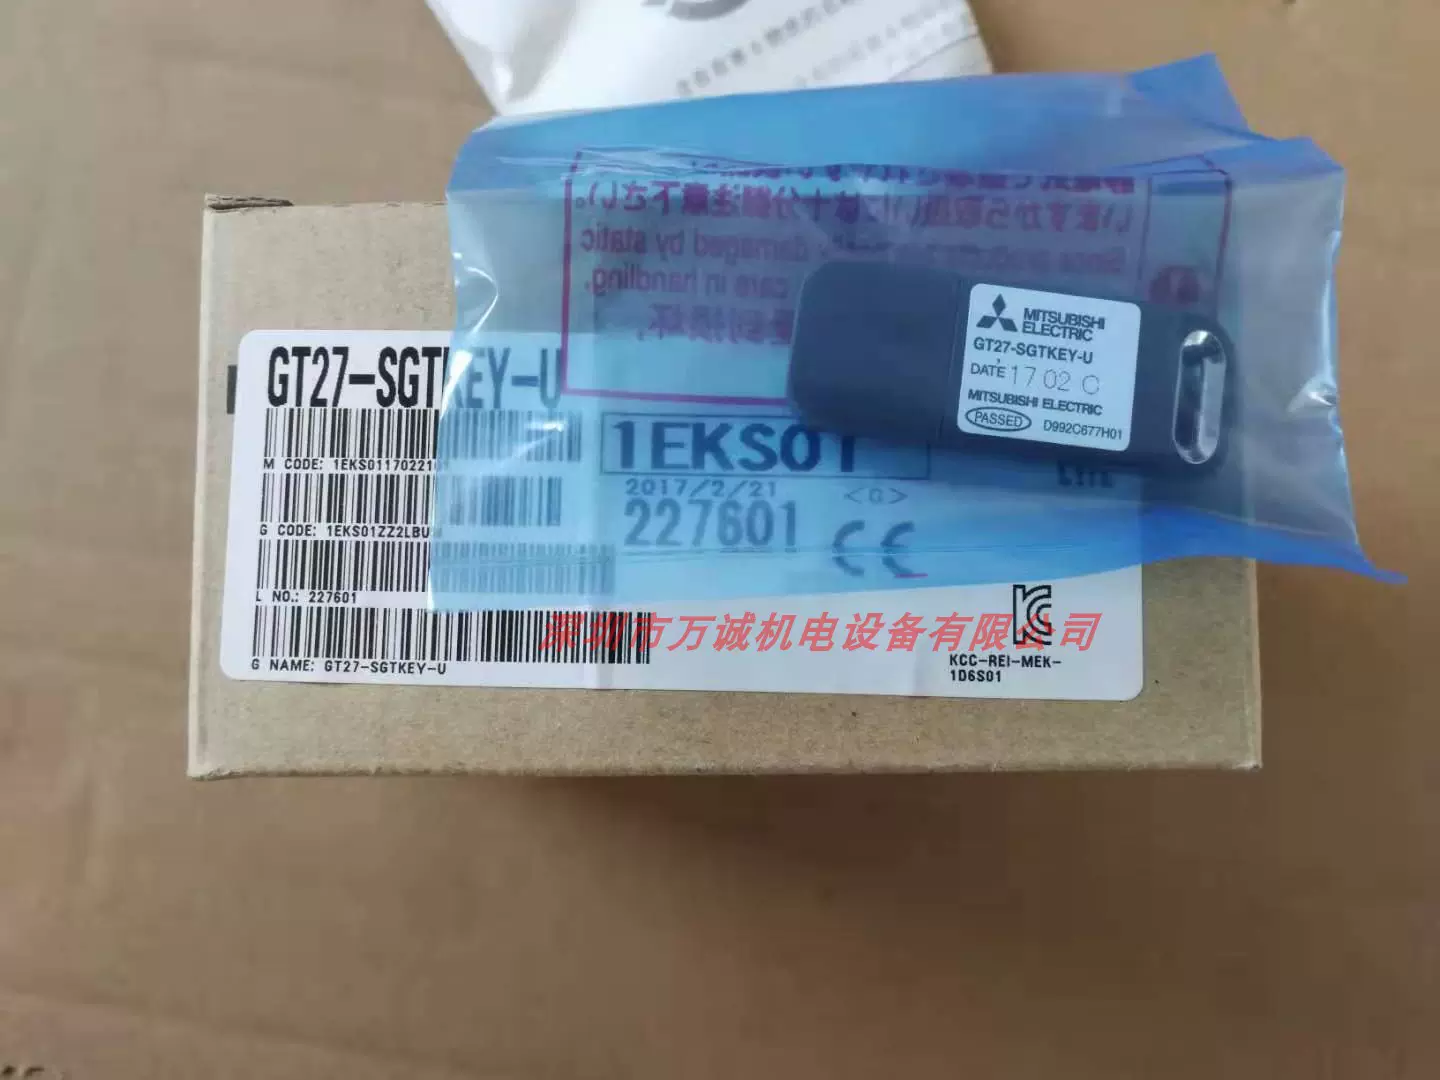 三菱觸控屏幕行車紀錄器GT27-SGTKEY-U 全新原裝假一賠十-Taobao